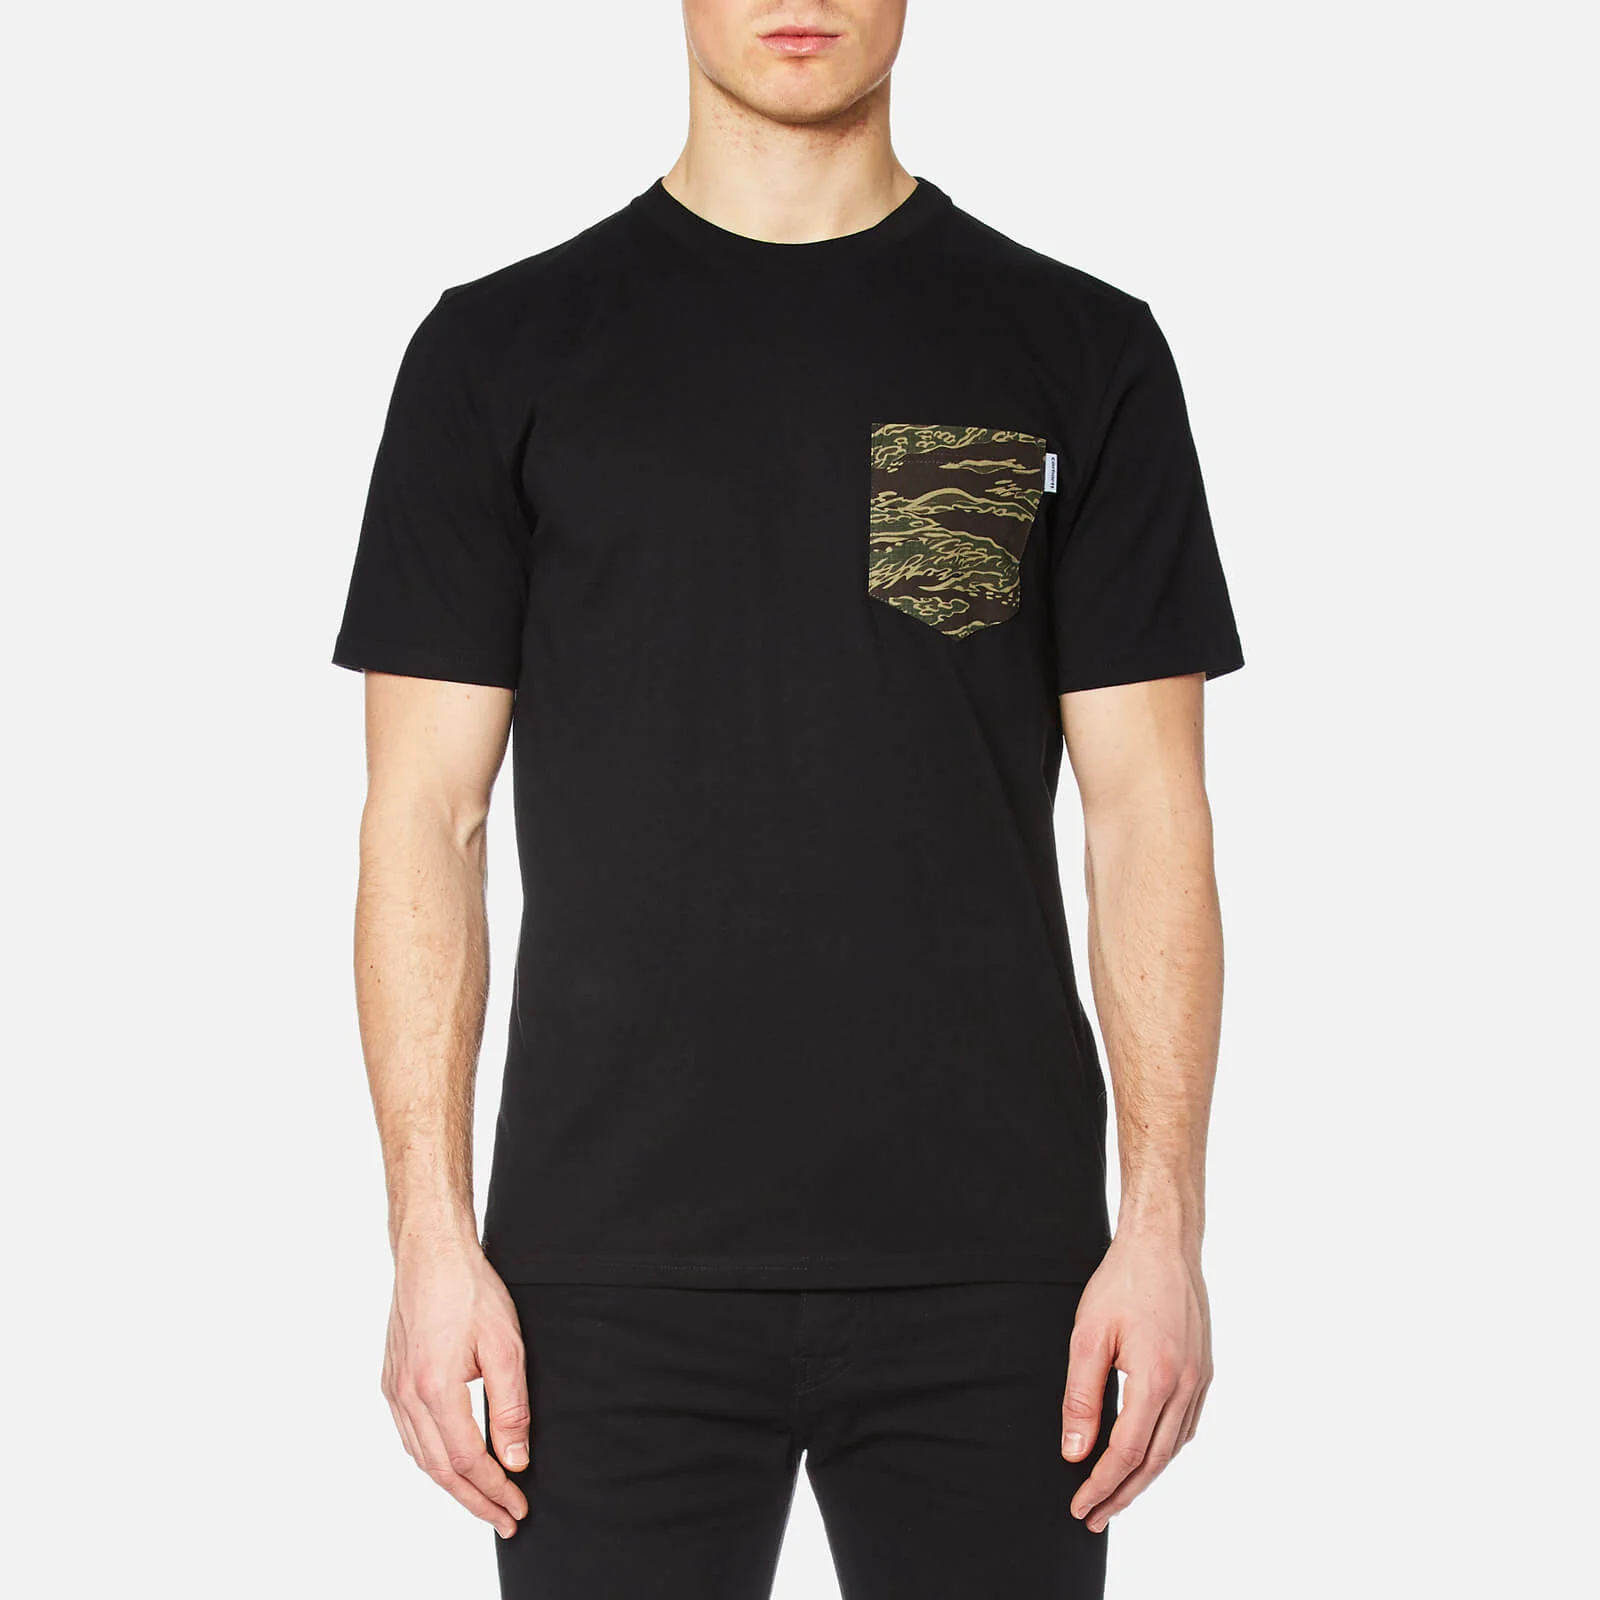 Carhartt Men's Short Sleeve Lester Pocket T-Shirt - Black/Camo Tiger Image 1